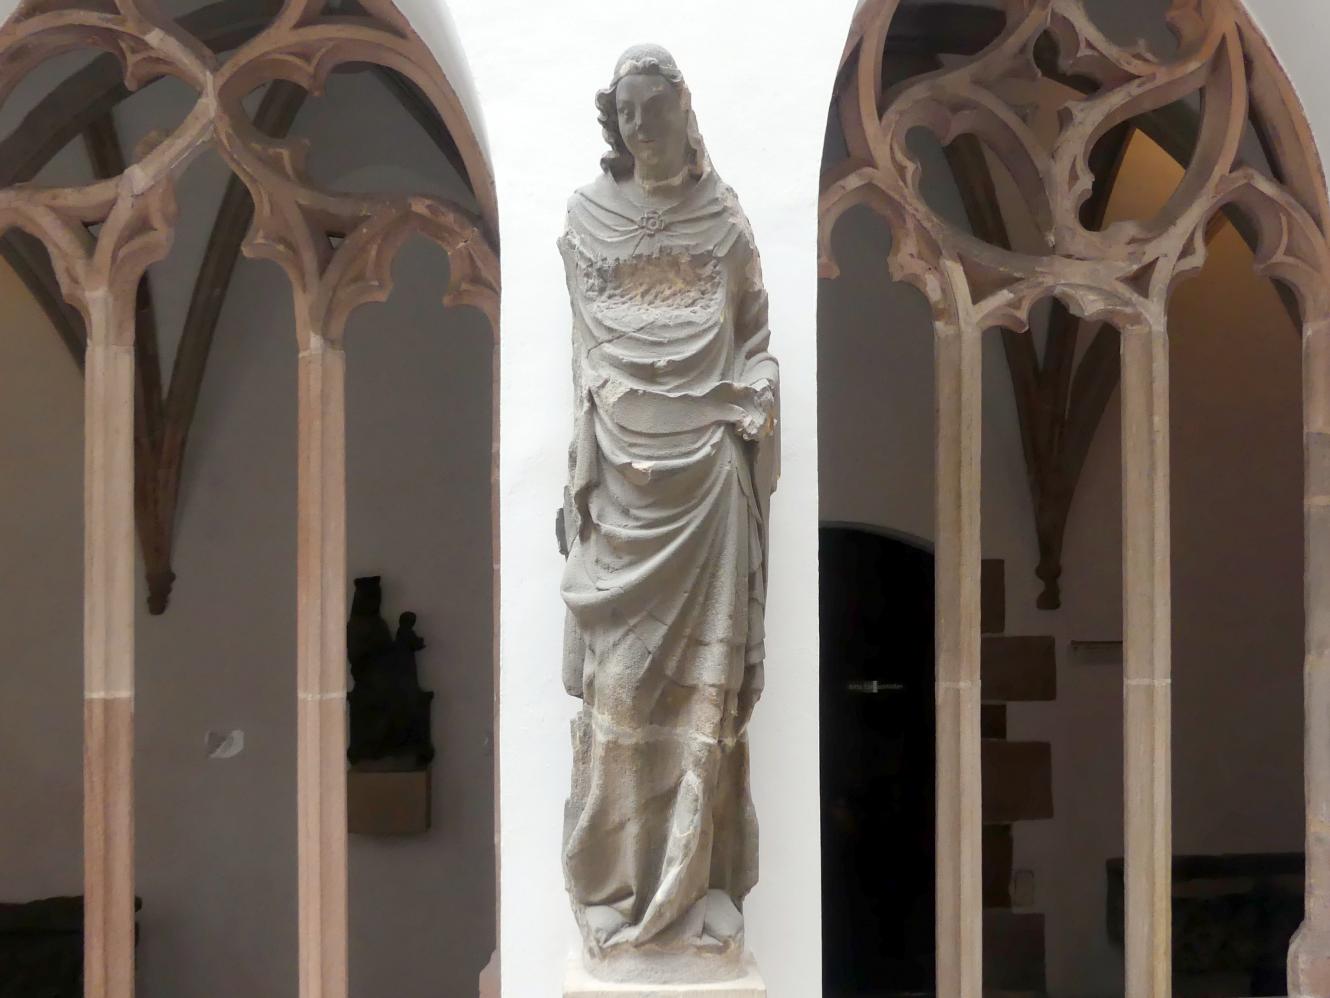 Verkündigung an Maria, Nürnberg, Stadtpfarrkirche Zu Unserer lieben Frau (Frauenkirche), jetzt Nürnberg, Germanisches Nationalmuseum, Saal 31, um 1360, Bild 6/10